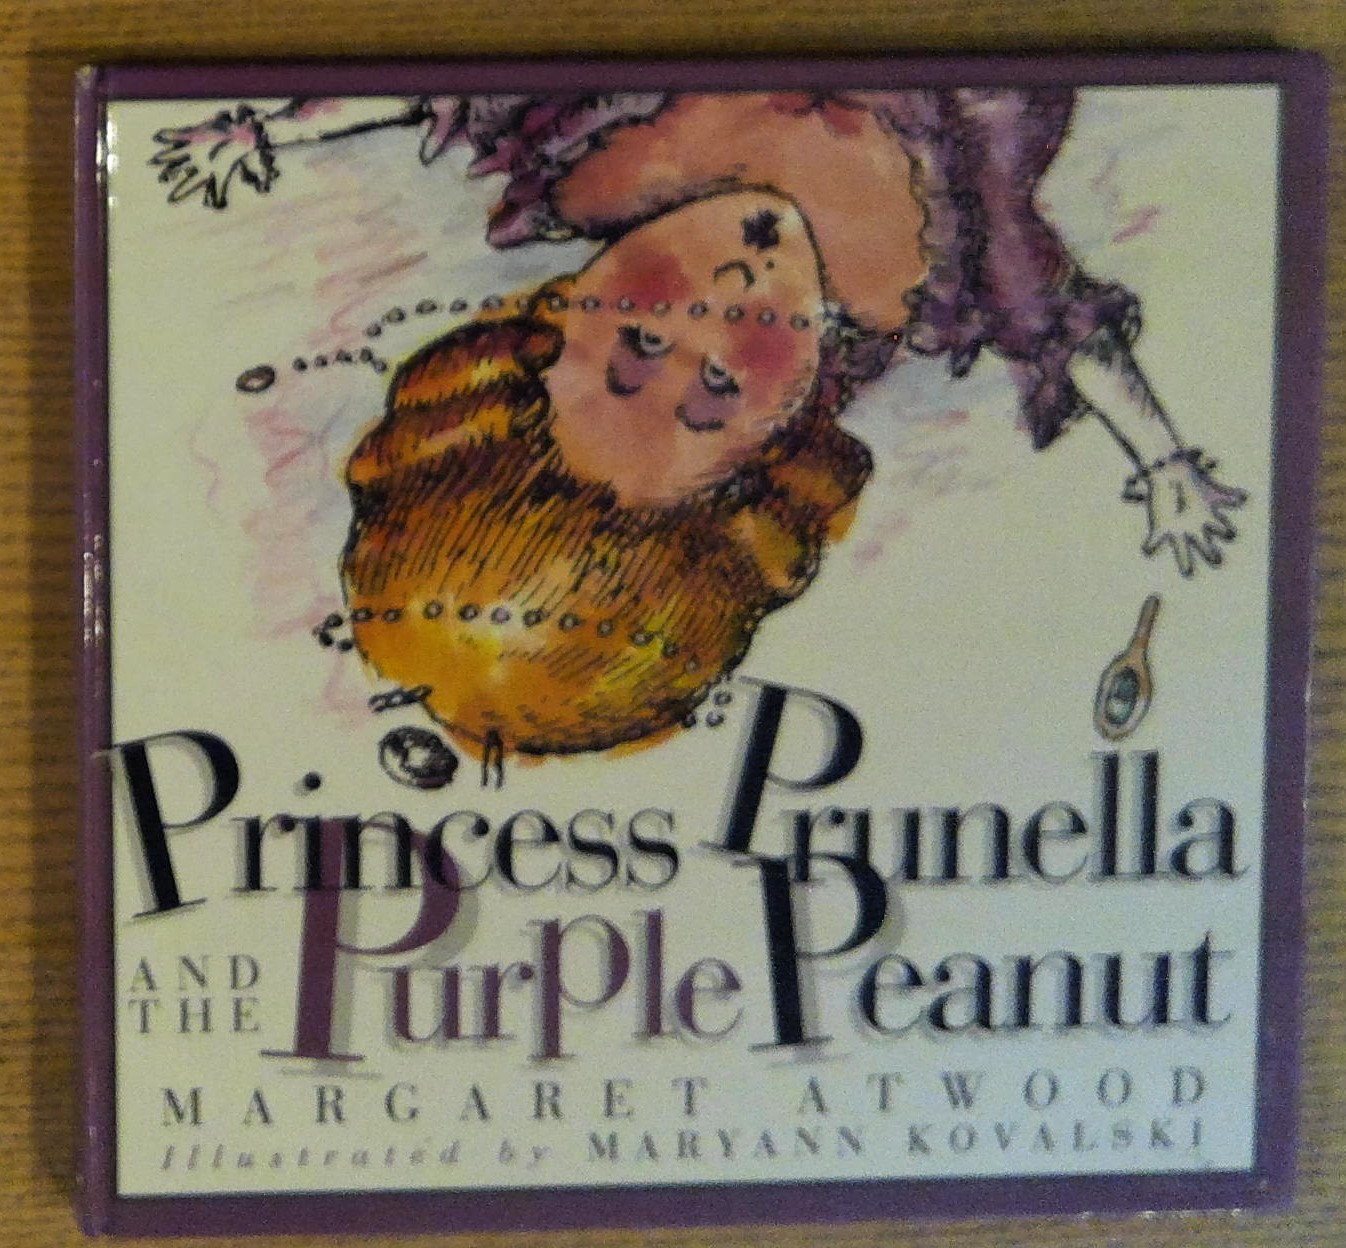 antonella cataldo recommends the story of prunella pic